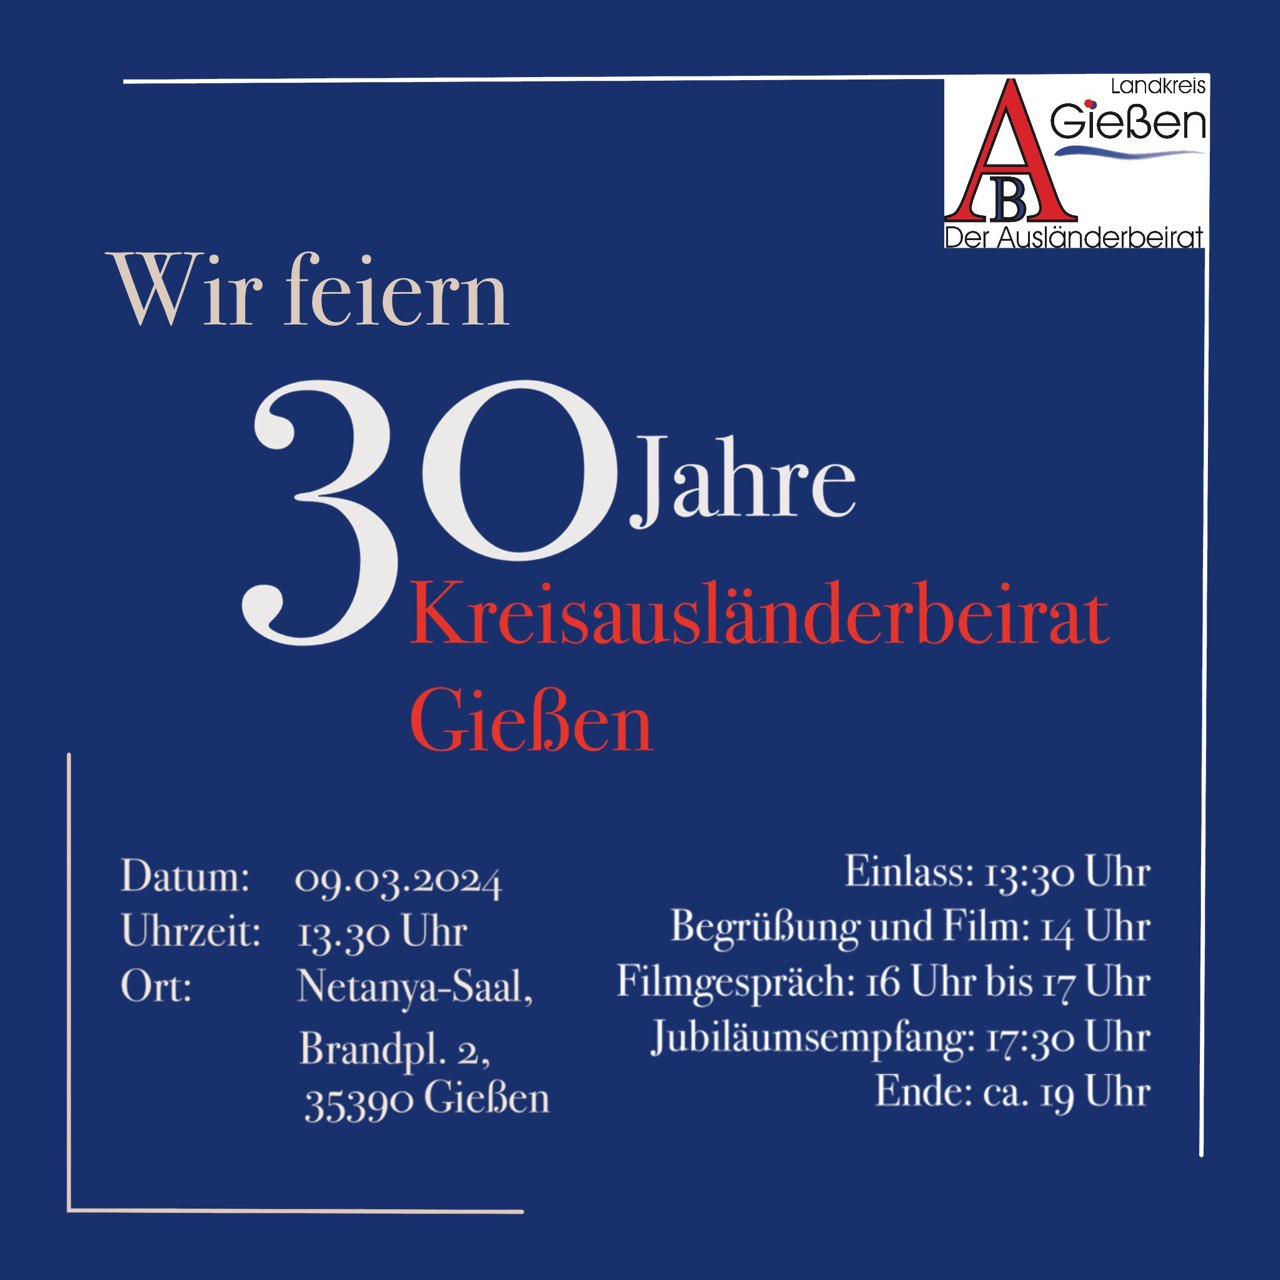 Zum 30. Jubiläum des Kreisausländerbeirats Gießen - Herzliche Einladung!